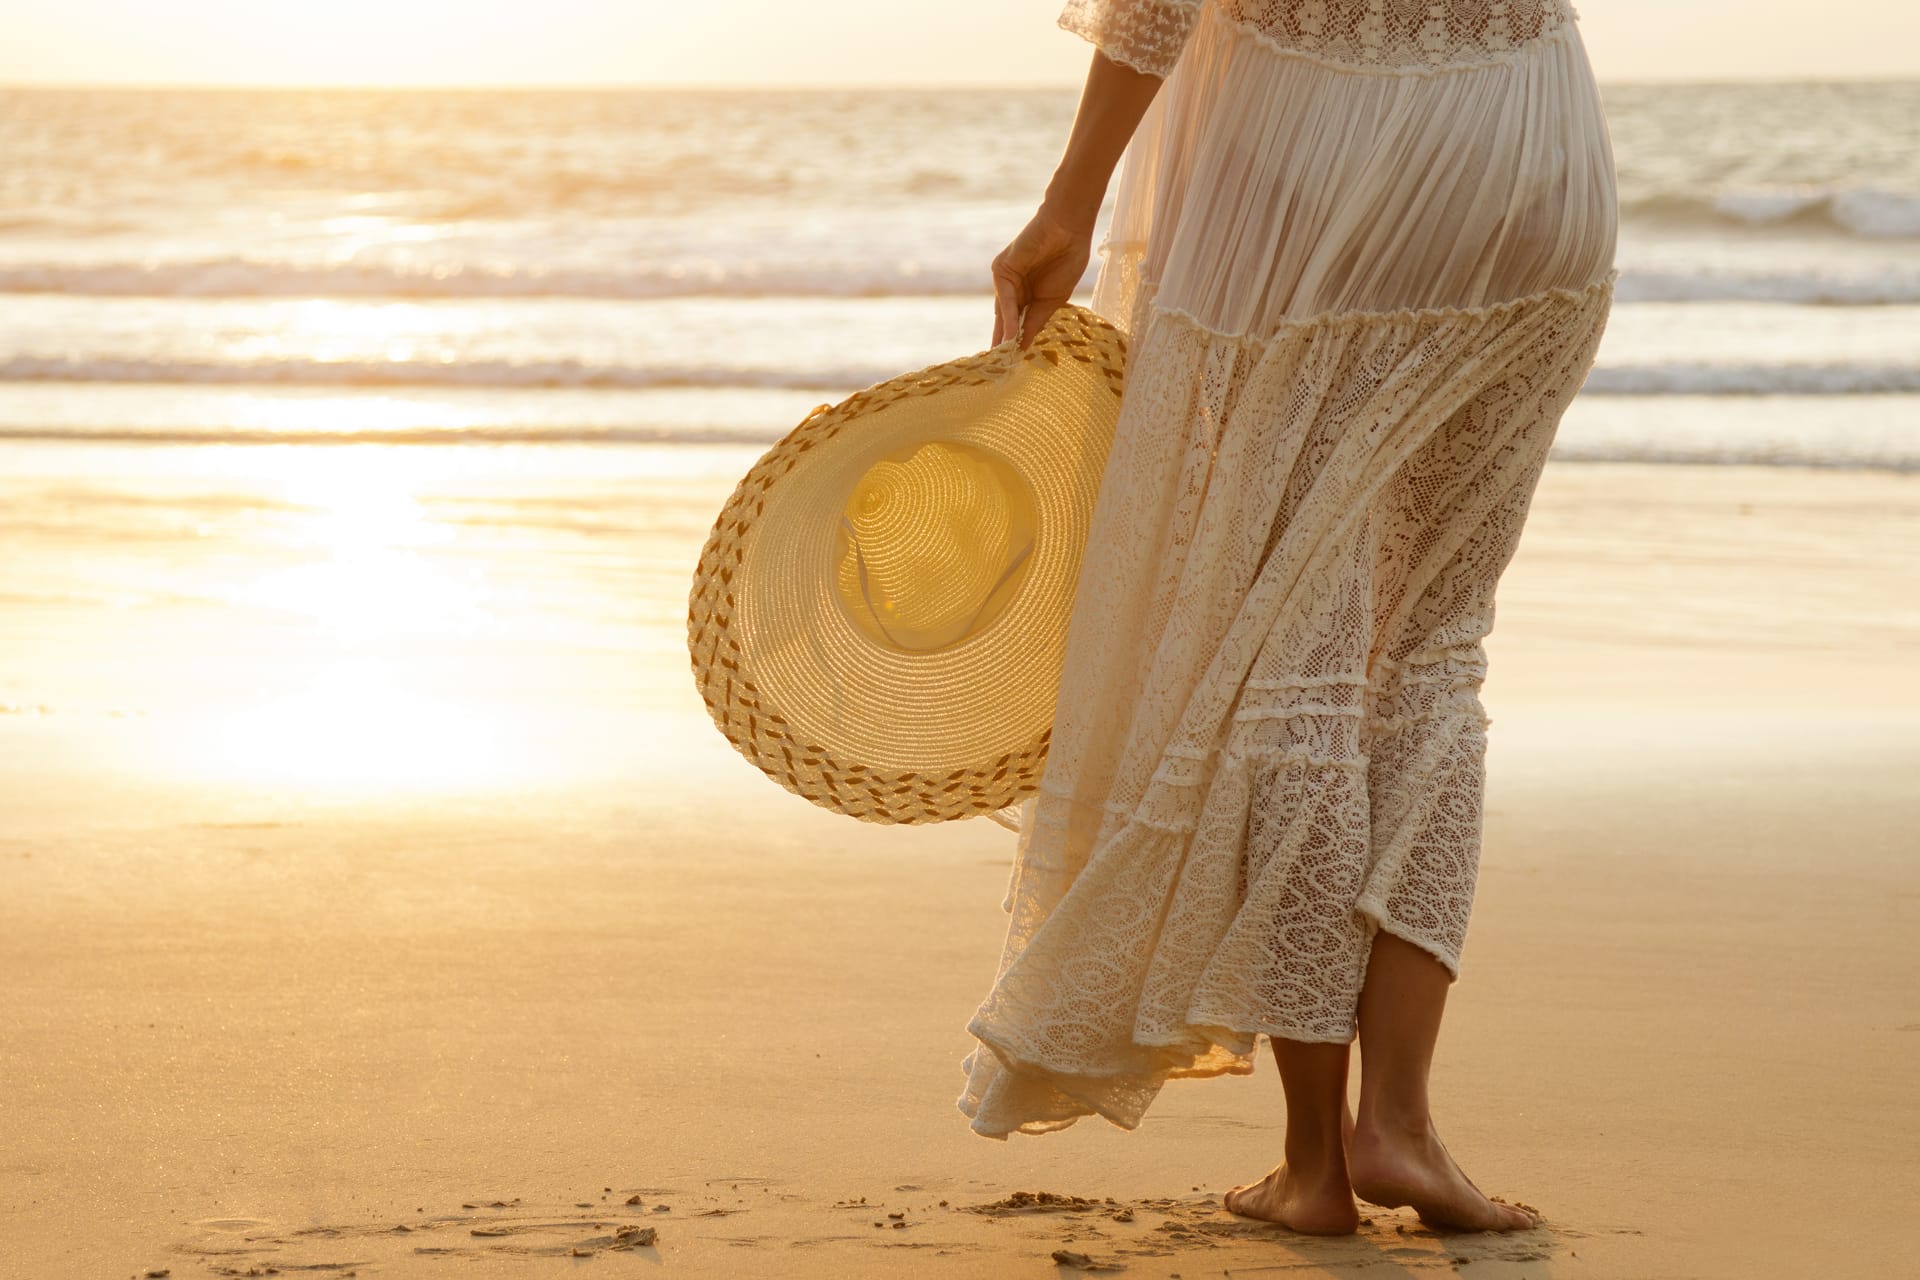 Woman wearing beautiful white dress beach